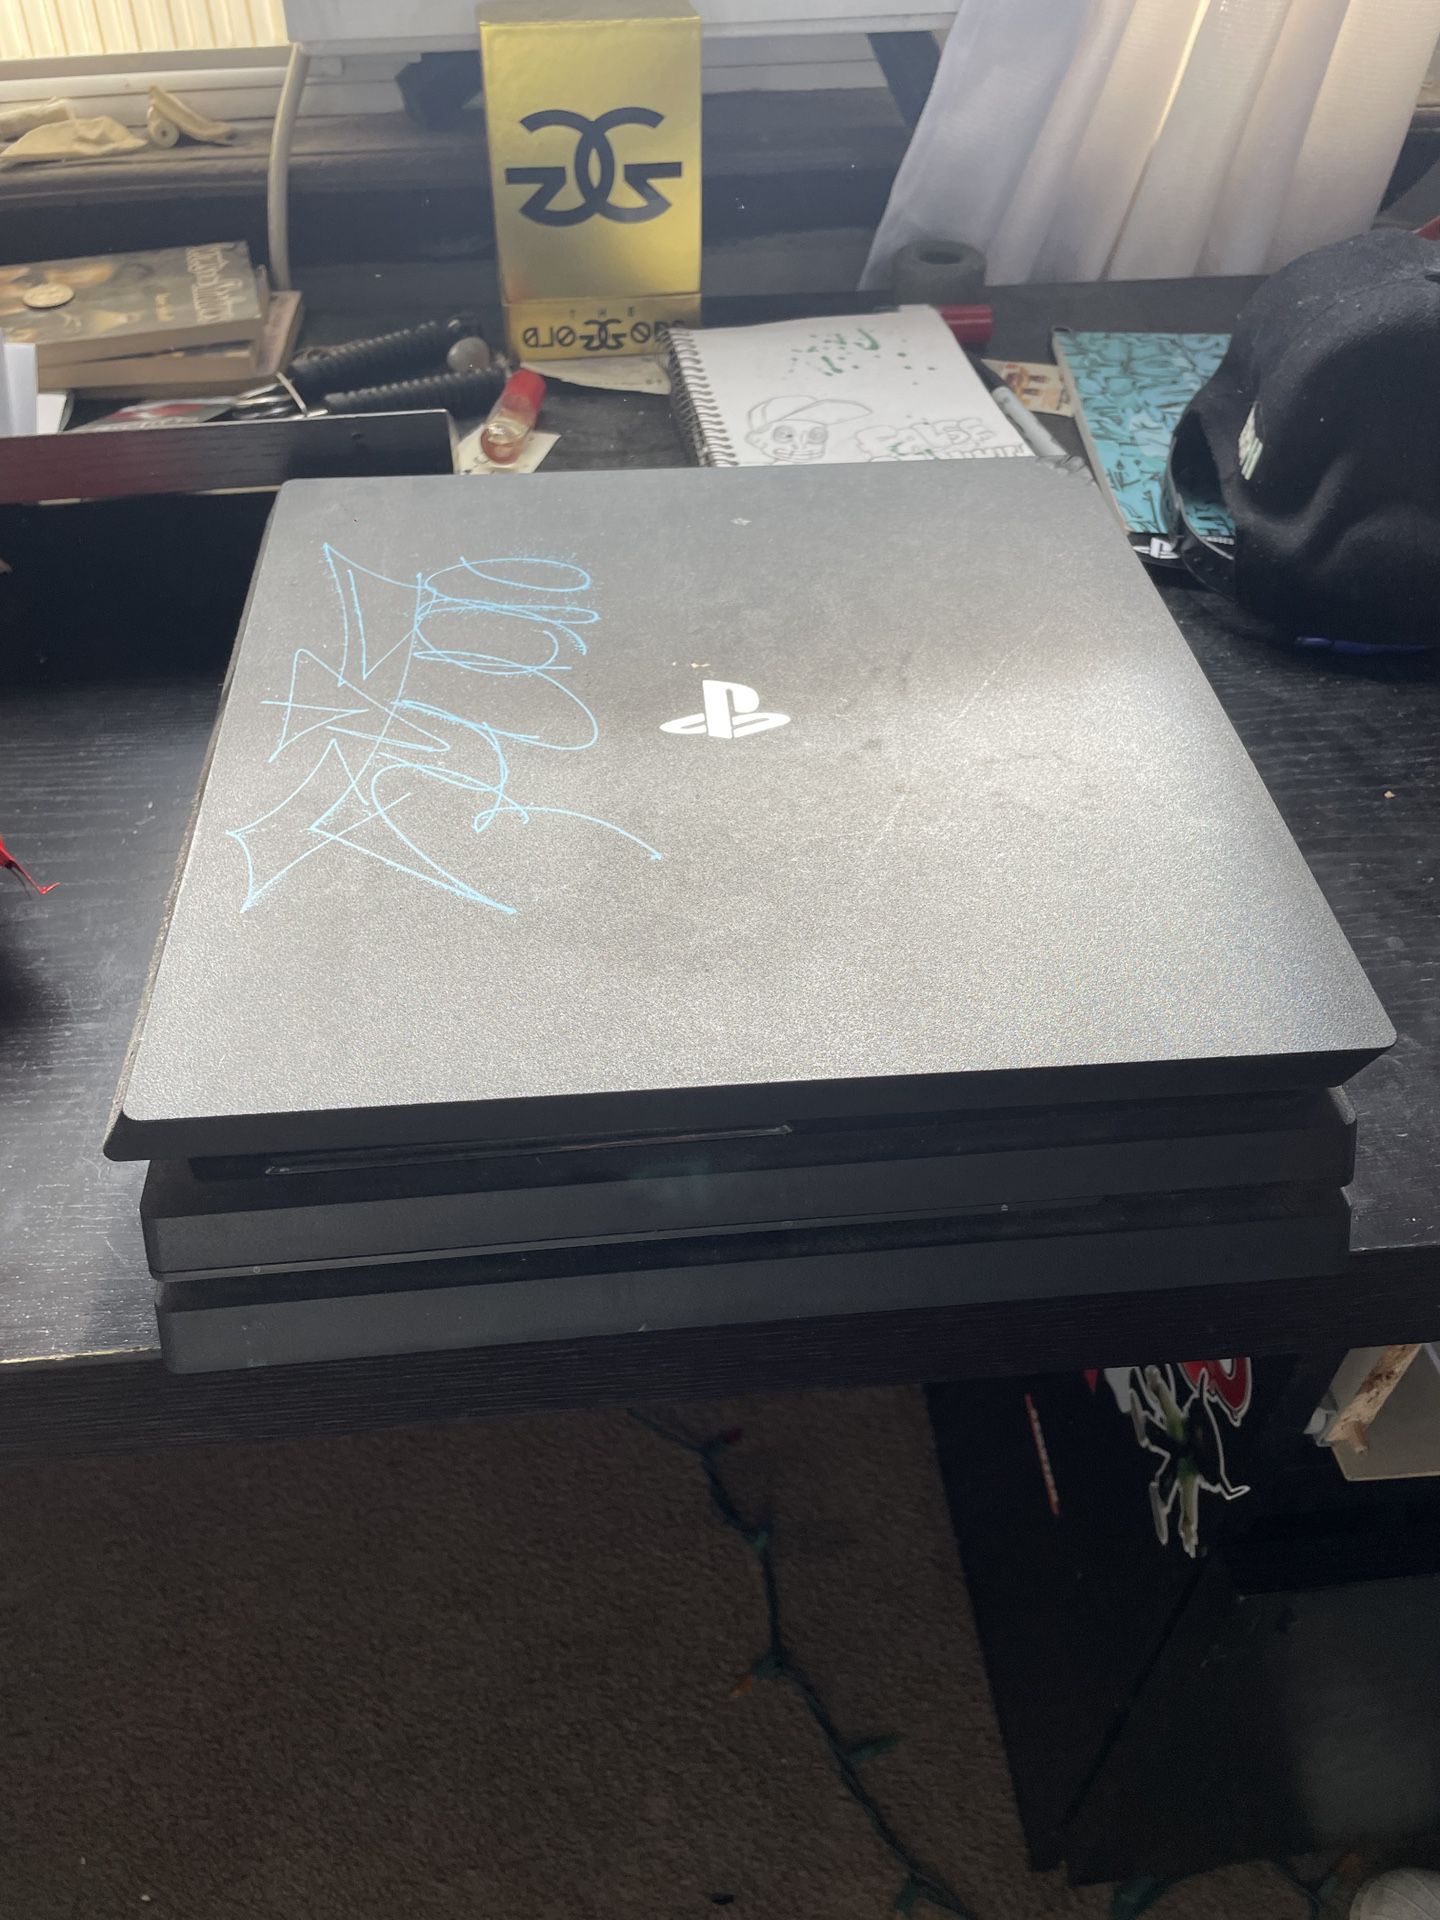 PS4 PlayStation 4